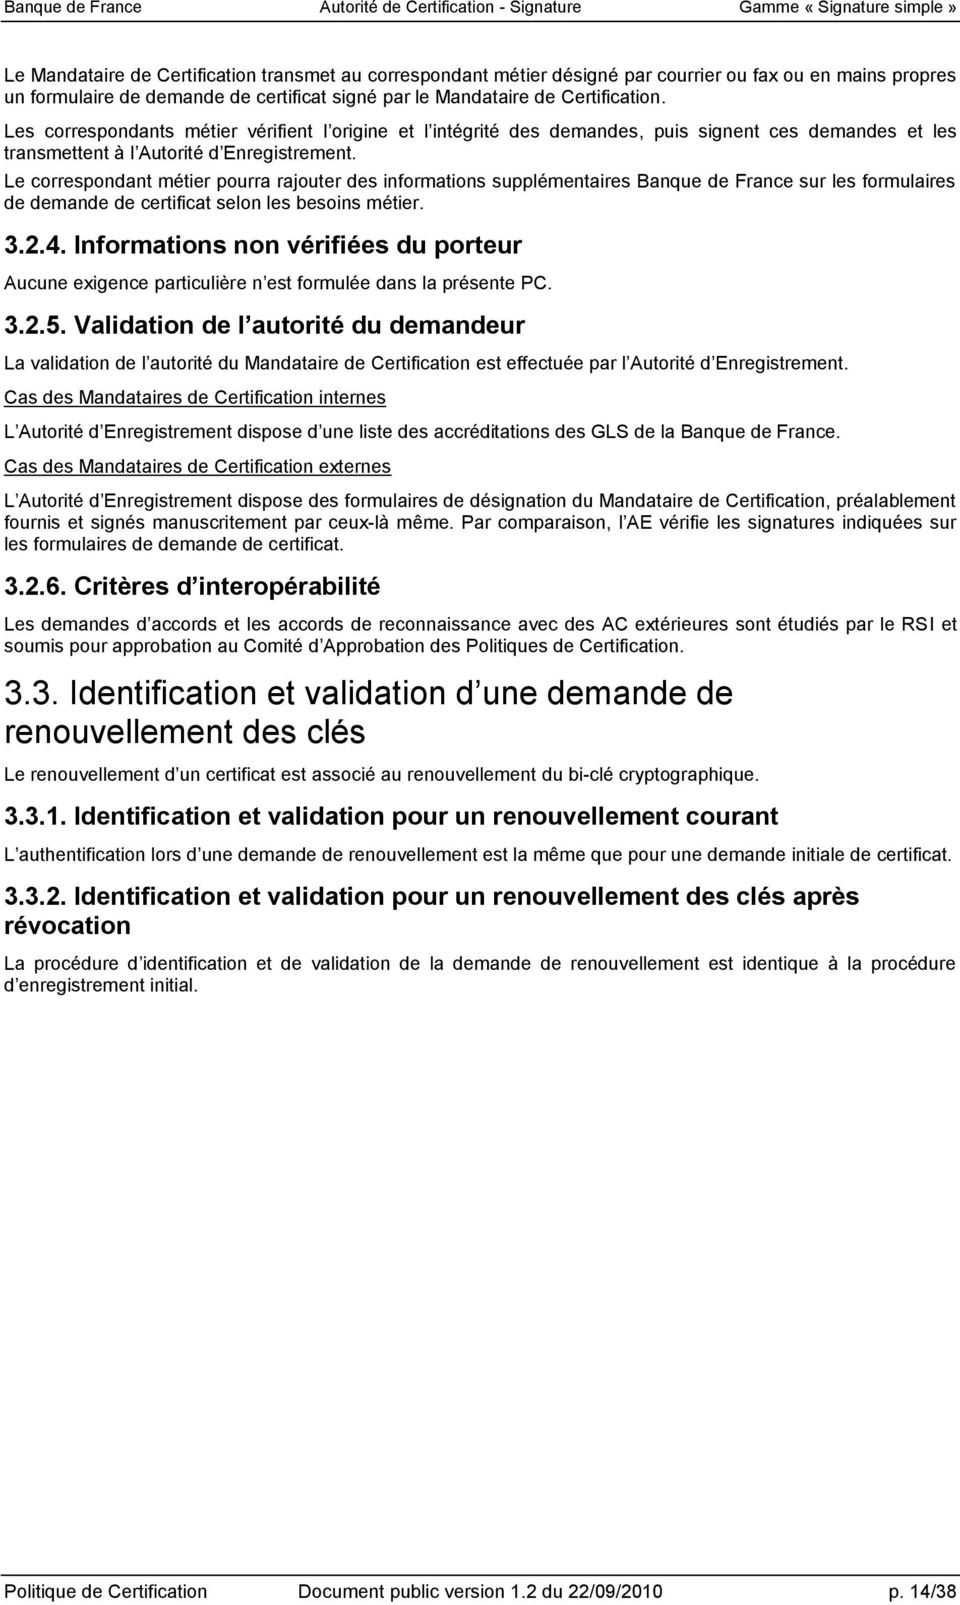 Le correspondant métier pourra rajouter des informations supplémentaires Banque de France sur les formulaires de demande de certificat selon les besoins métier. 3.2.4.